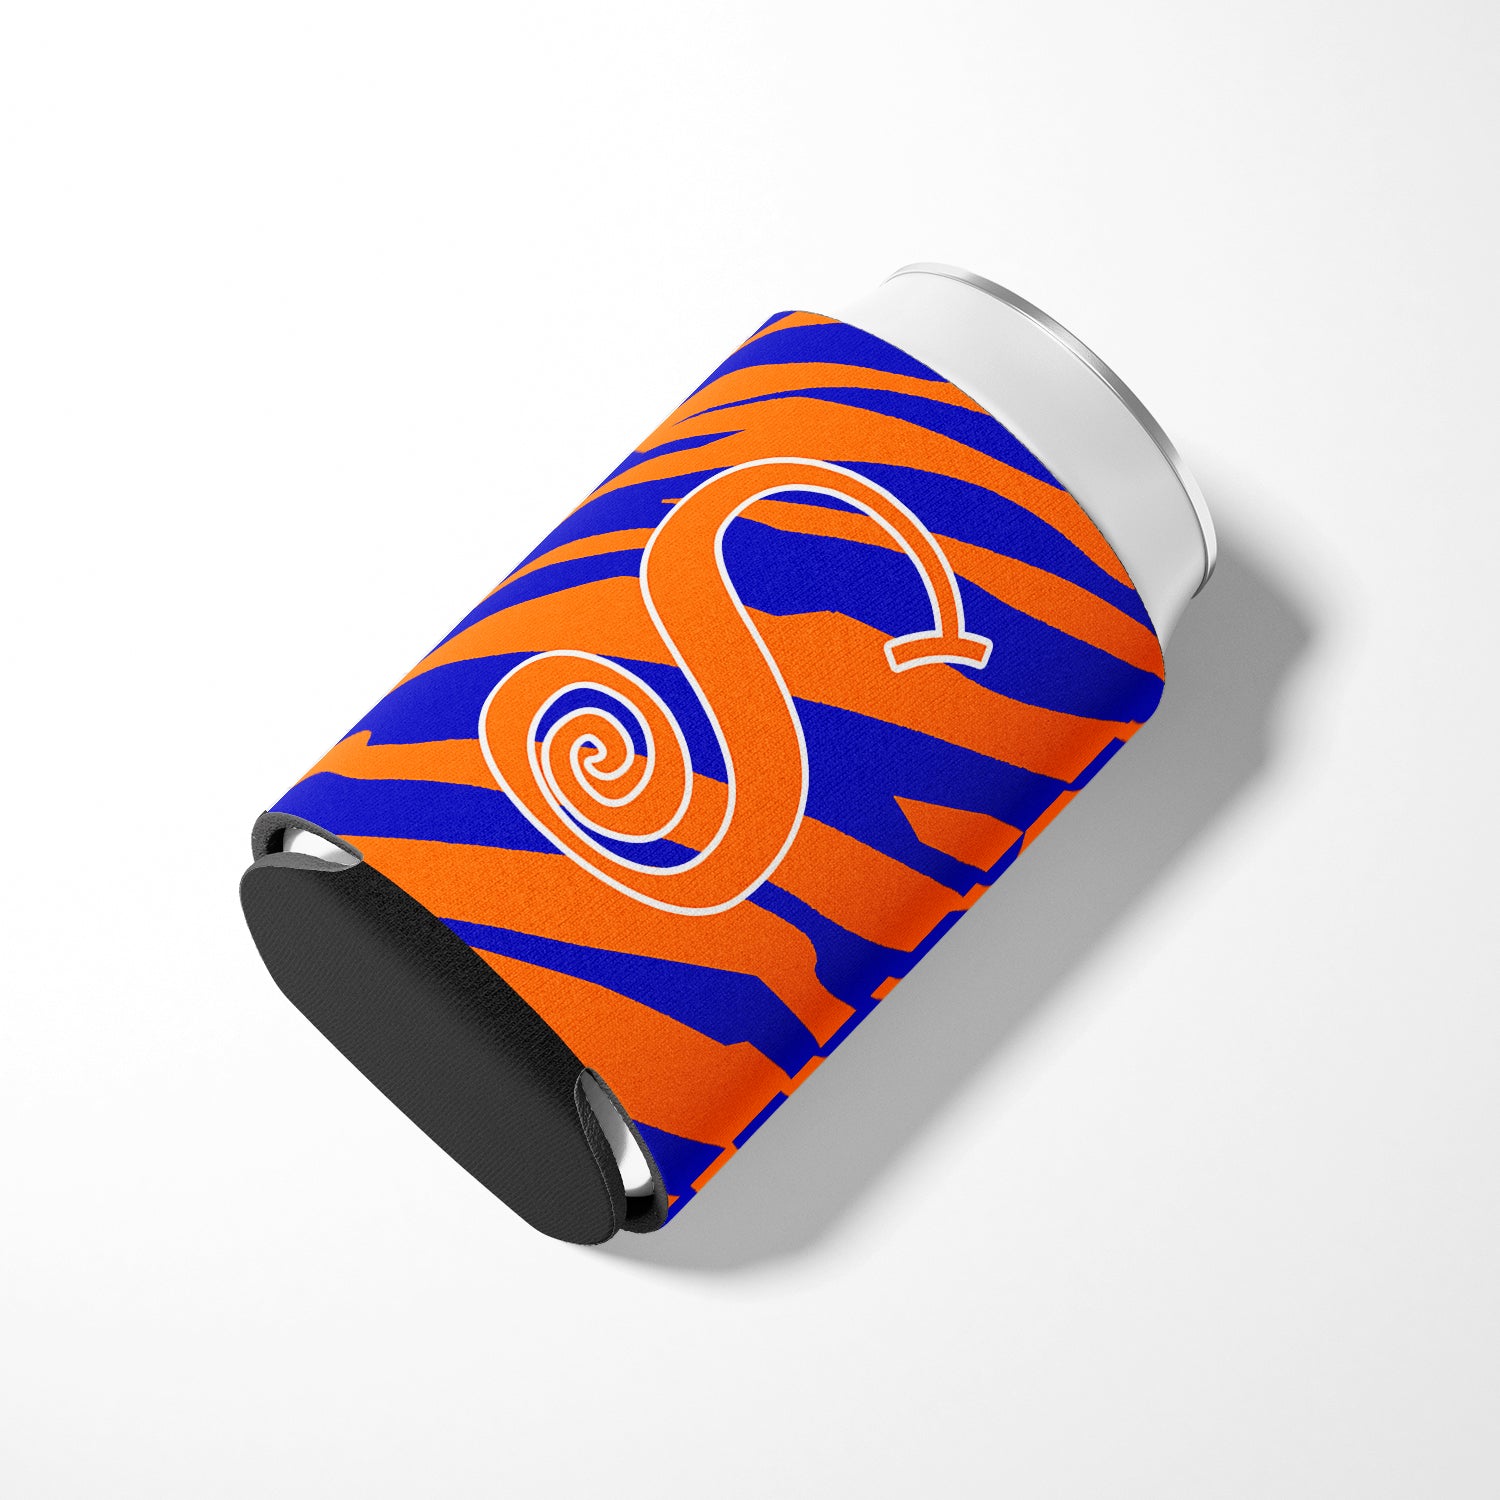 Letter S Initial Monogram - Tiger Stripe Blue and Orange Can Beverage Insulator Hugger.